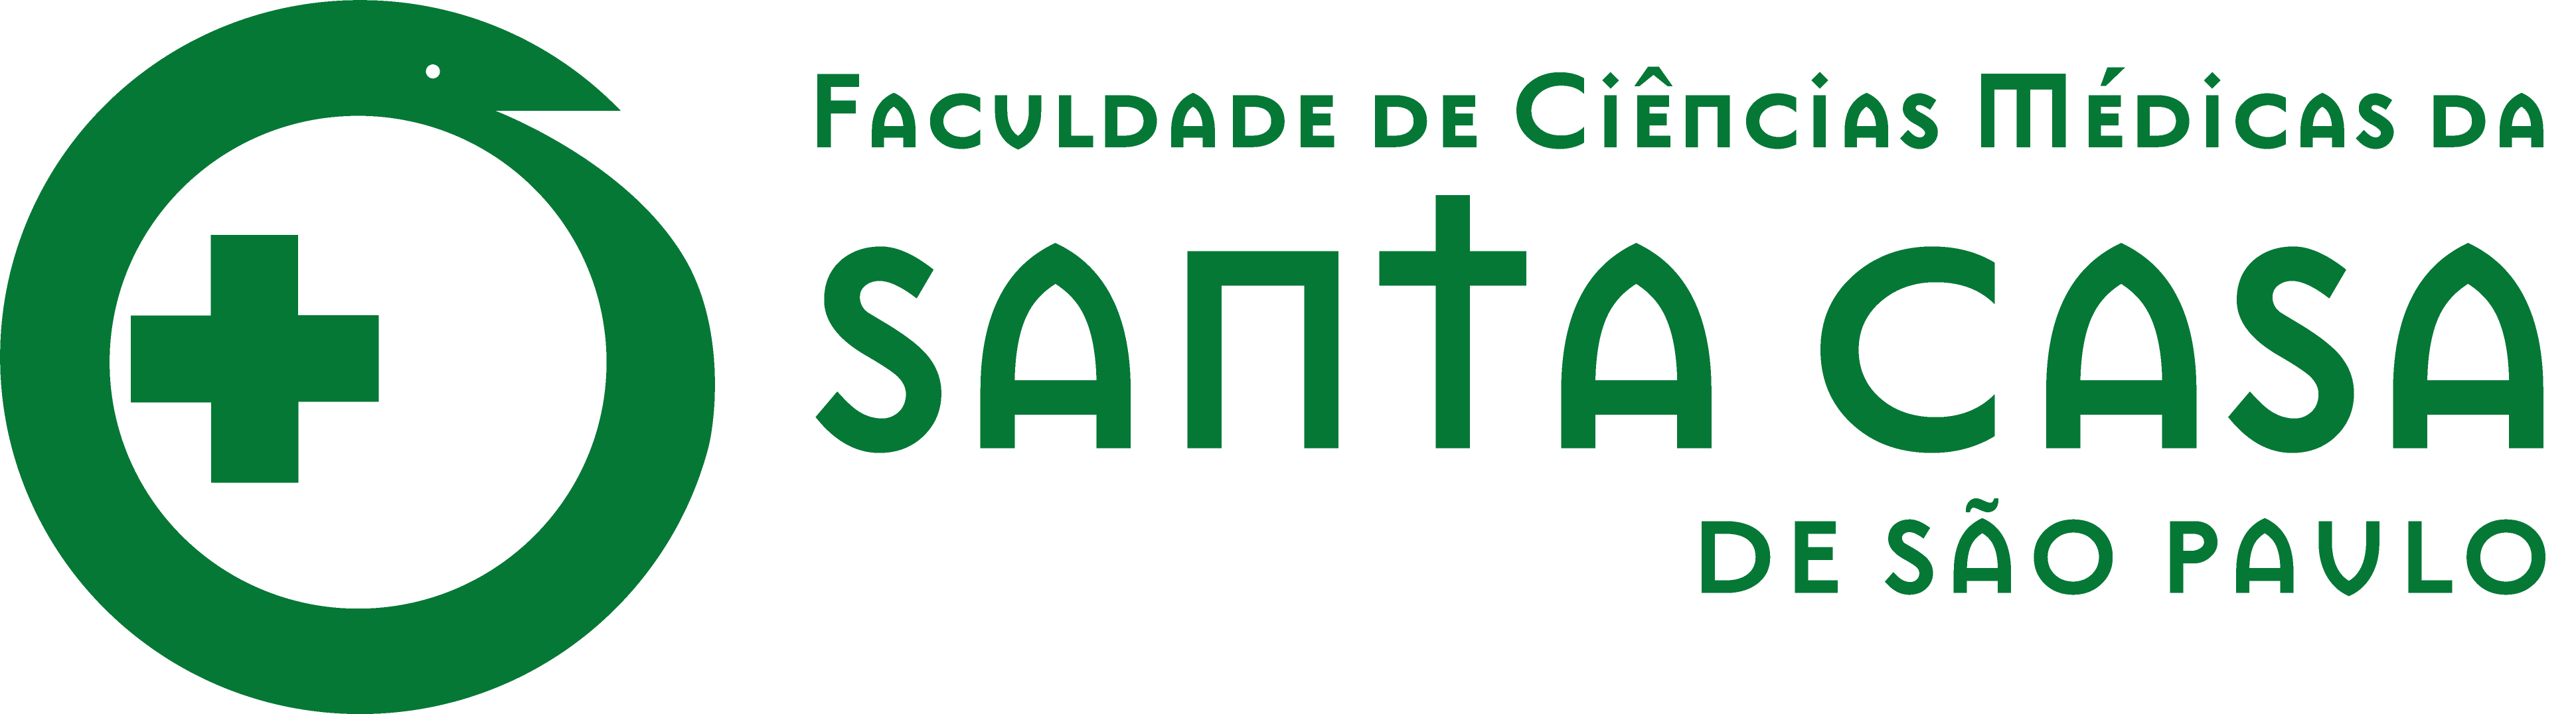 Logo Faculdade de ciências médicas da Santa Casa de São Paulo